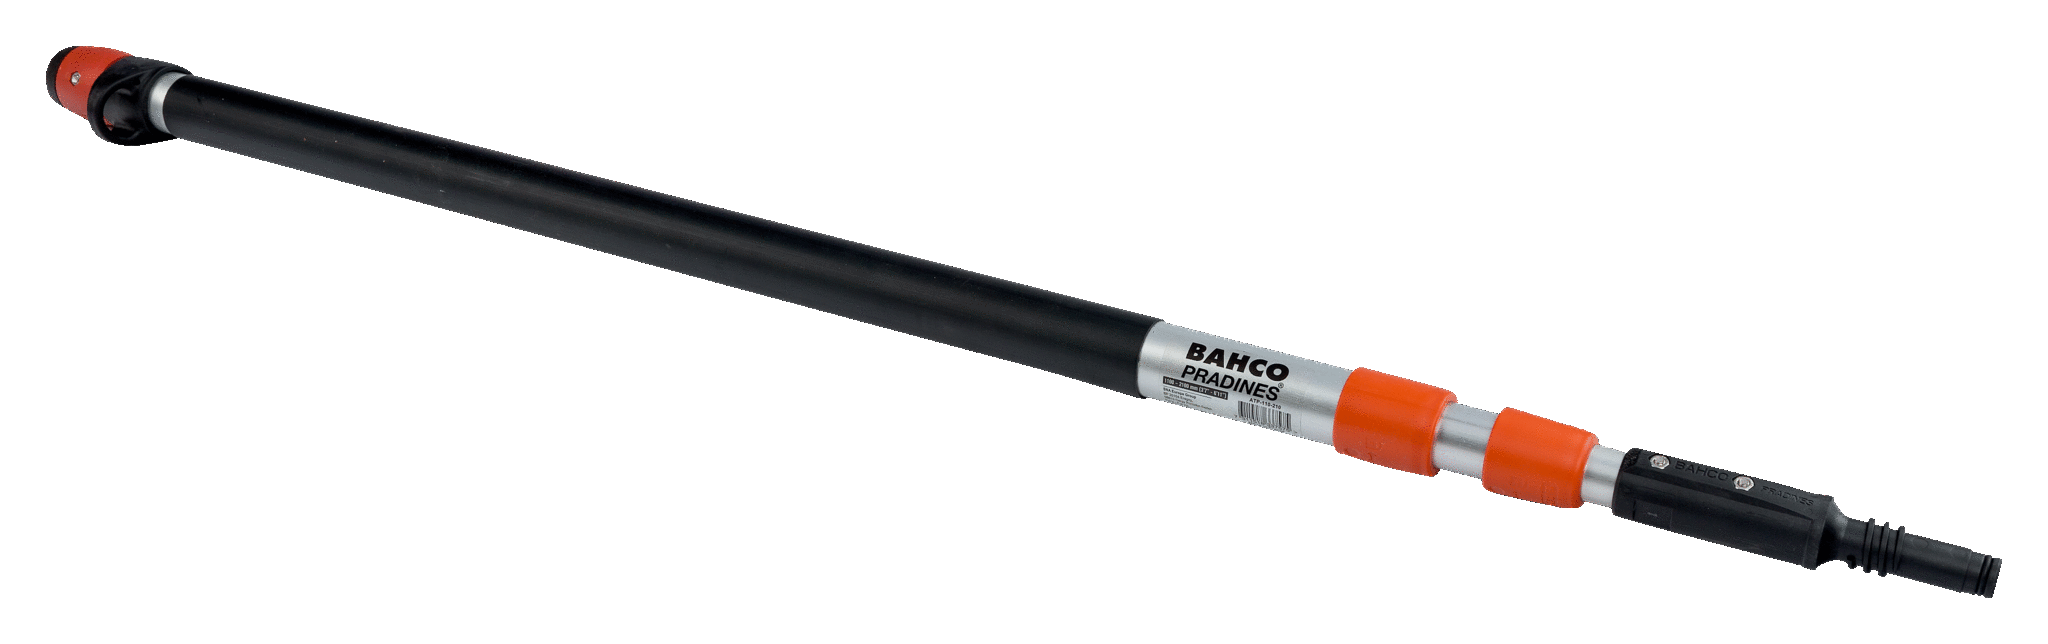 Сверхлегкий алюминиевый укороченный телескопический шест BAHCO ATP-110-210